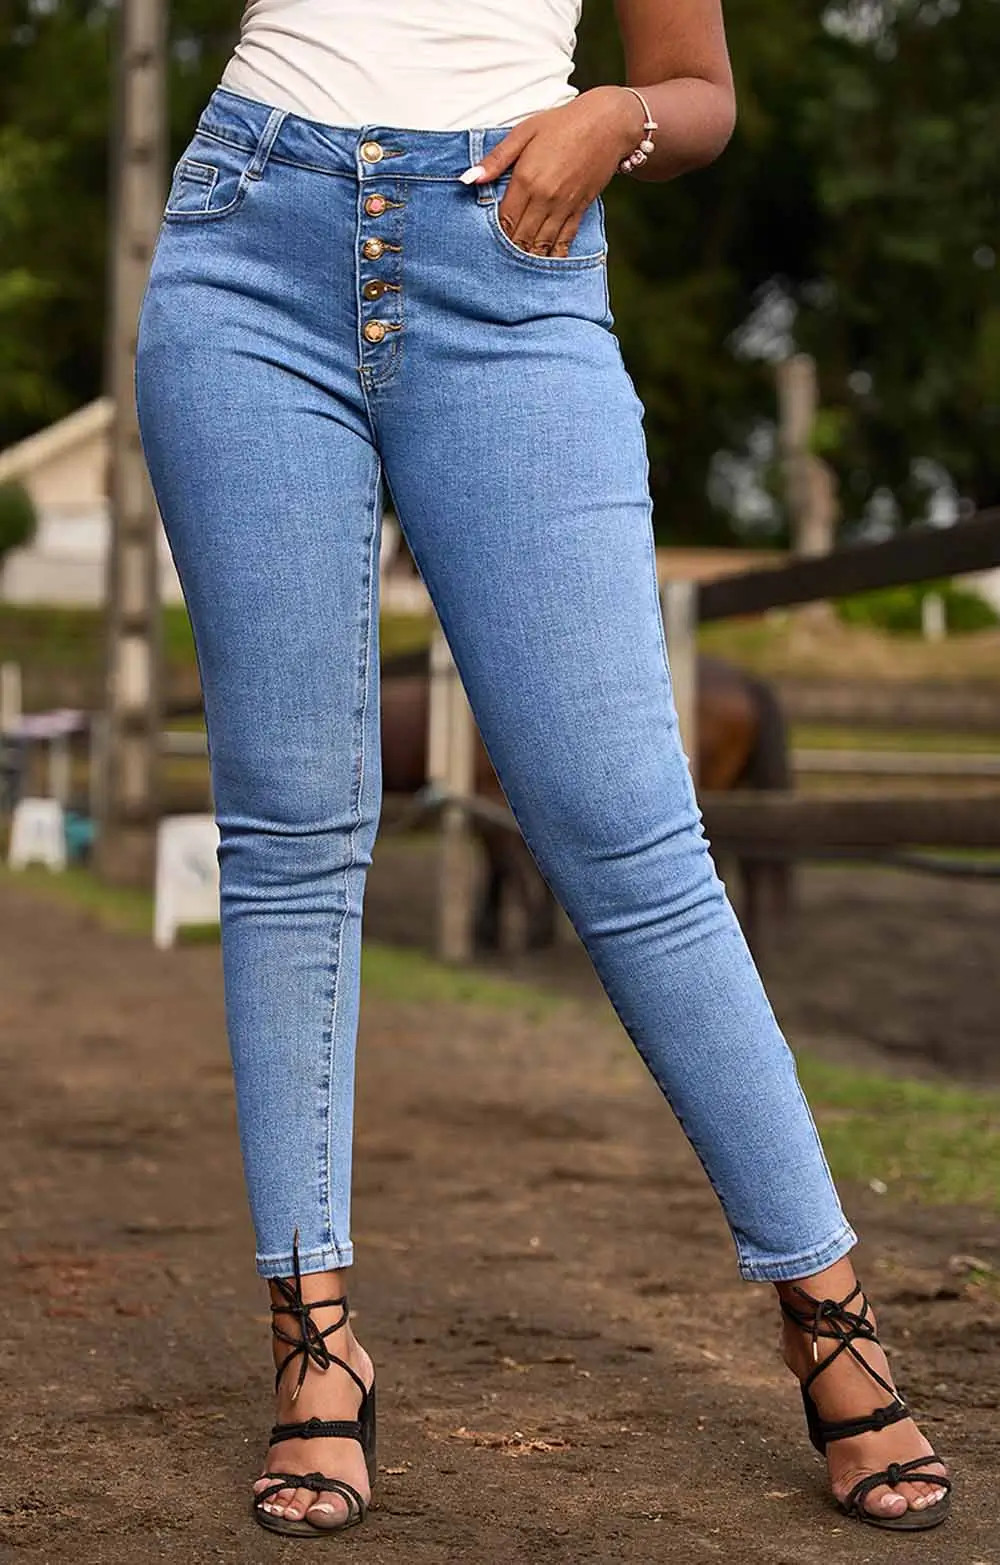 Ce jeans slim délavé est un indispensable. Sa coupe ajustée met en valeur la silhouette. Il se distingue par ses boutons colorées et dépareillés sur le devant, ajoutant une touche originale mais discrète à son design. Il est parfait pour créer un look tendance et décontracté.